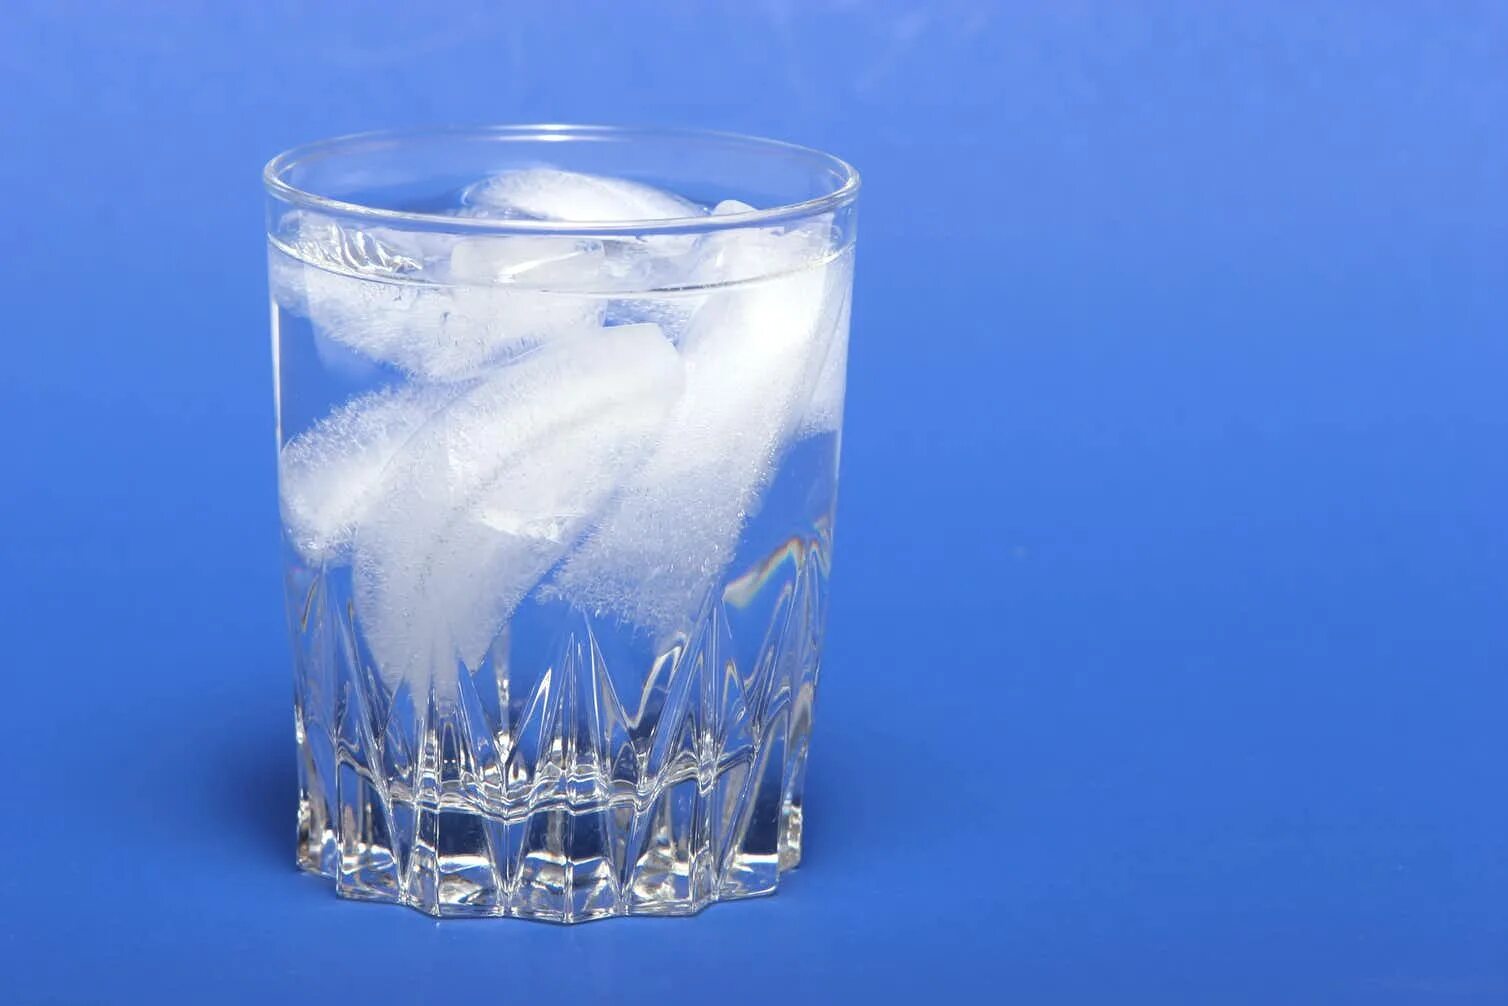 Замерзание воды. Стакан воды со льдом. Превращение воды в лед. Вода превращается в лед. Лед плавает в стакане.